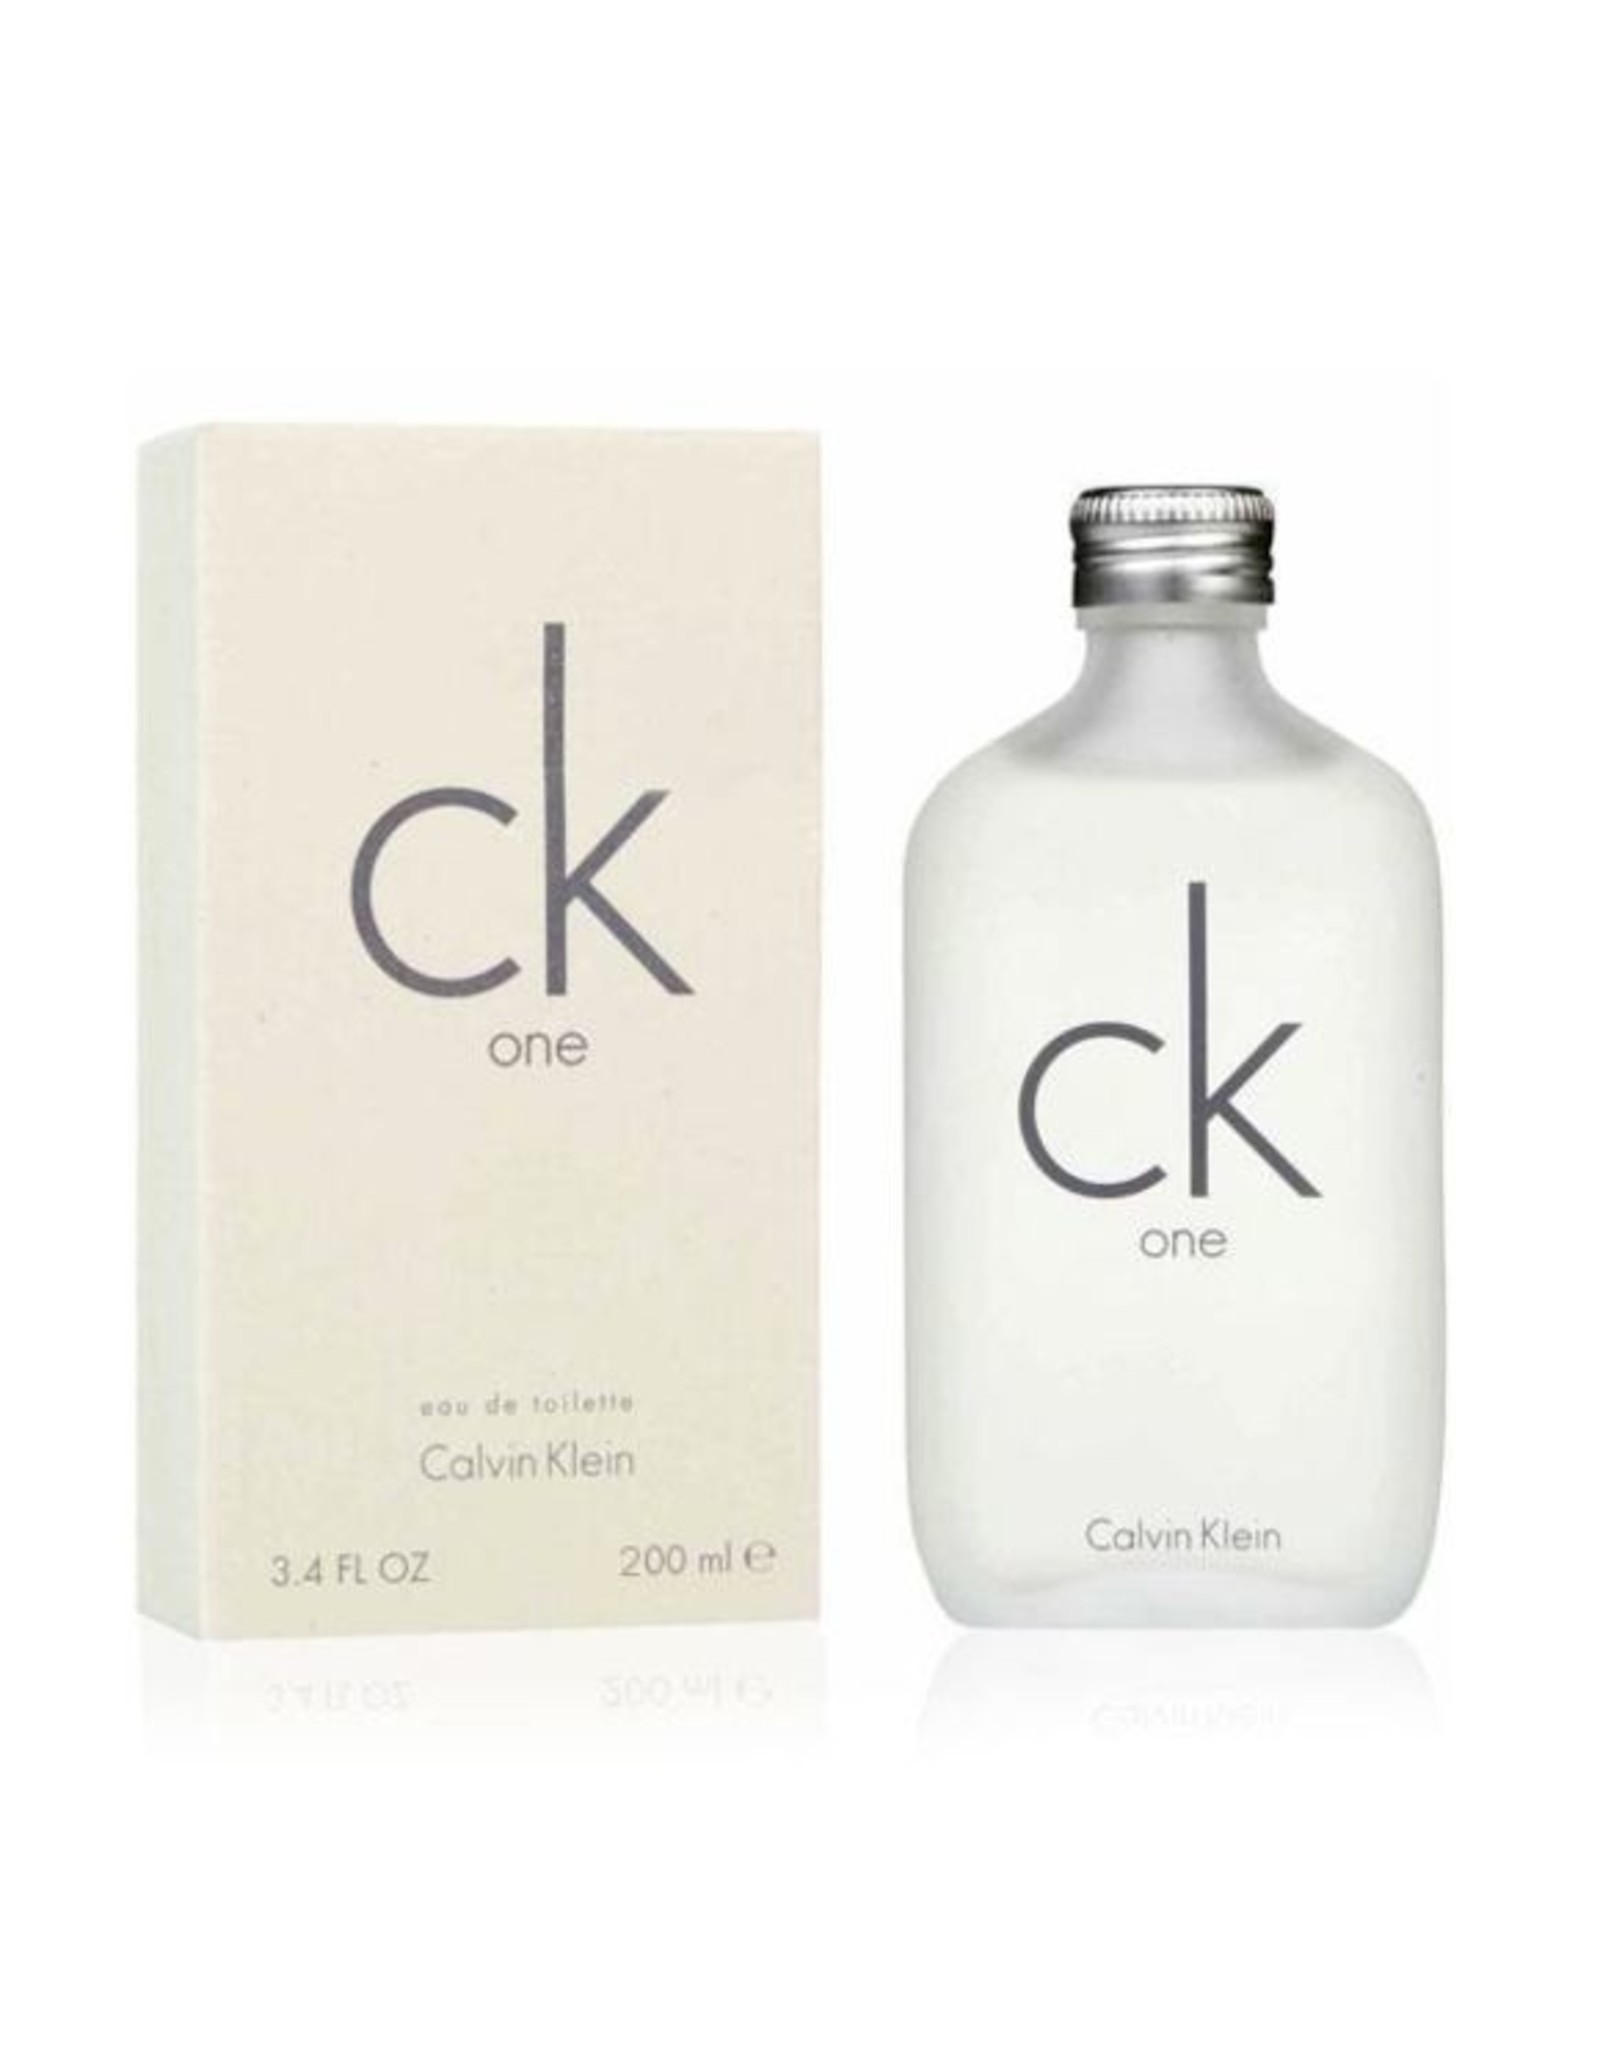 ck one parfum